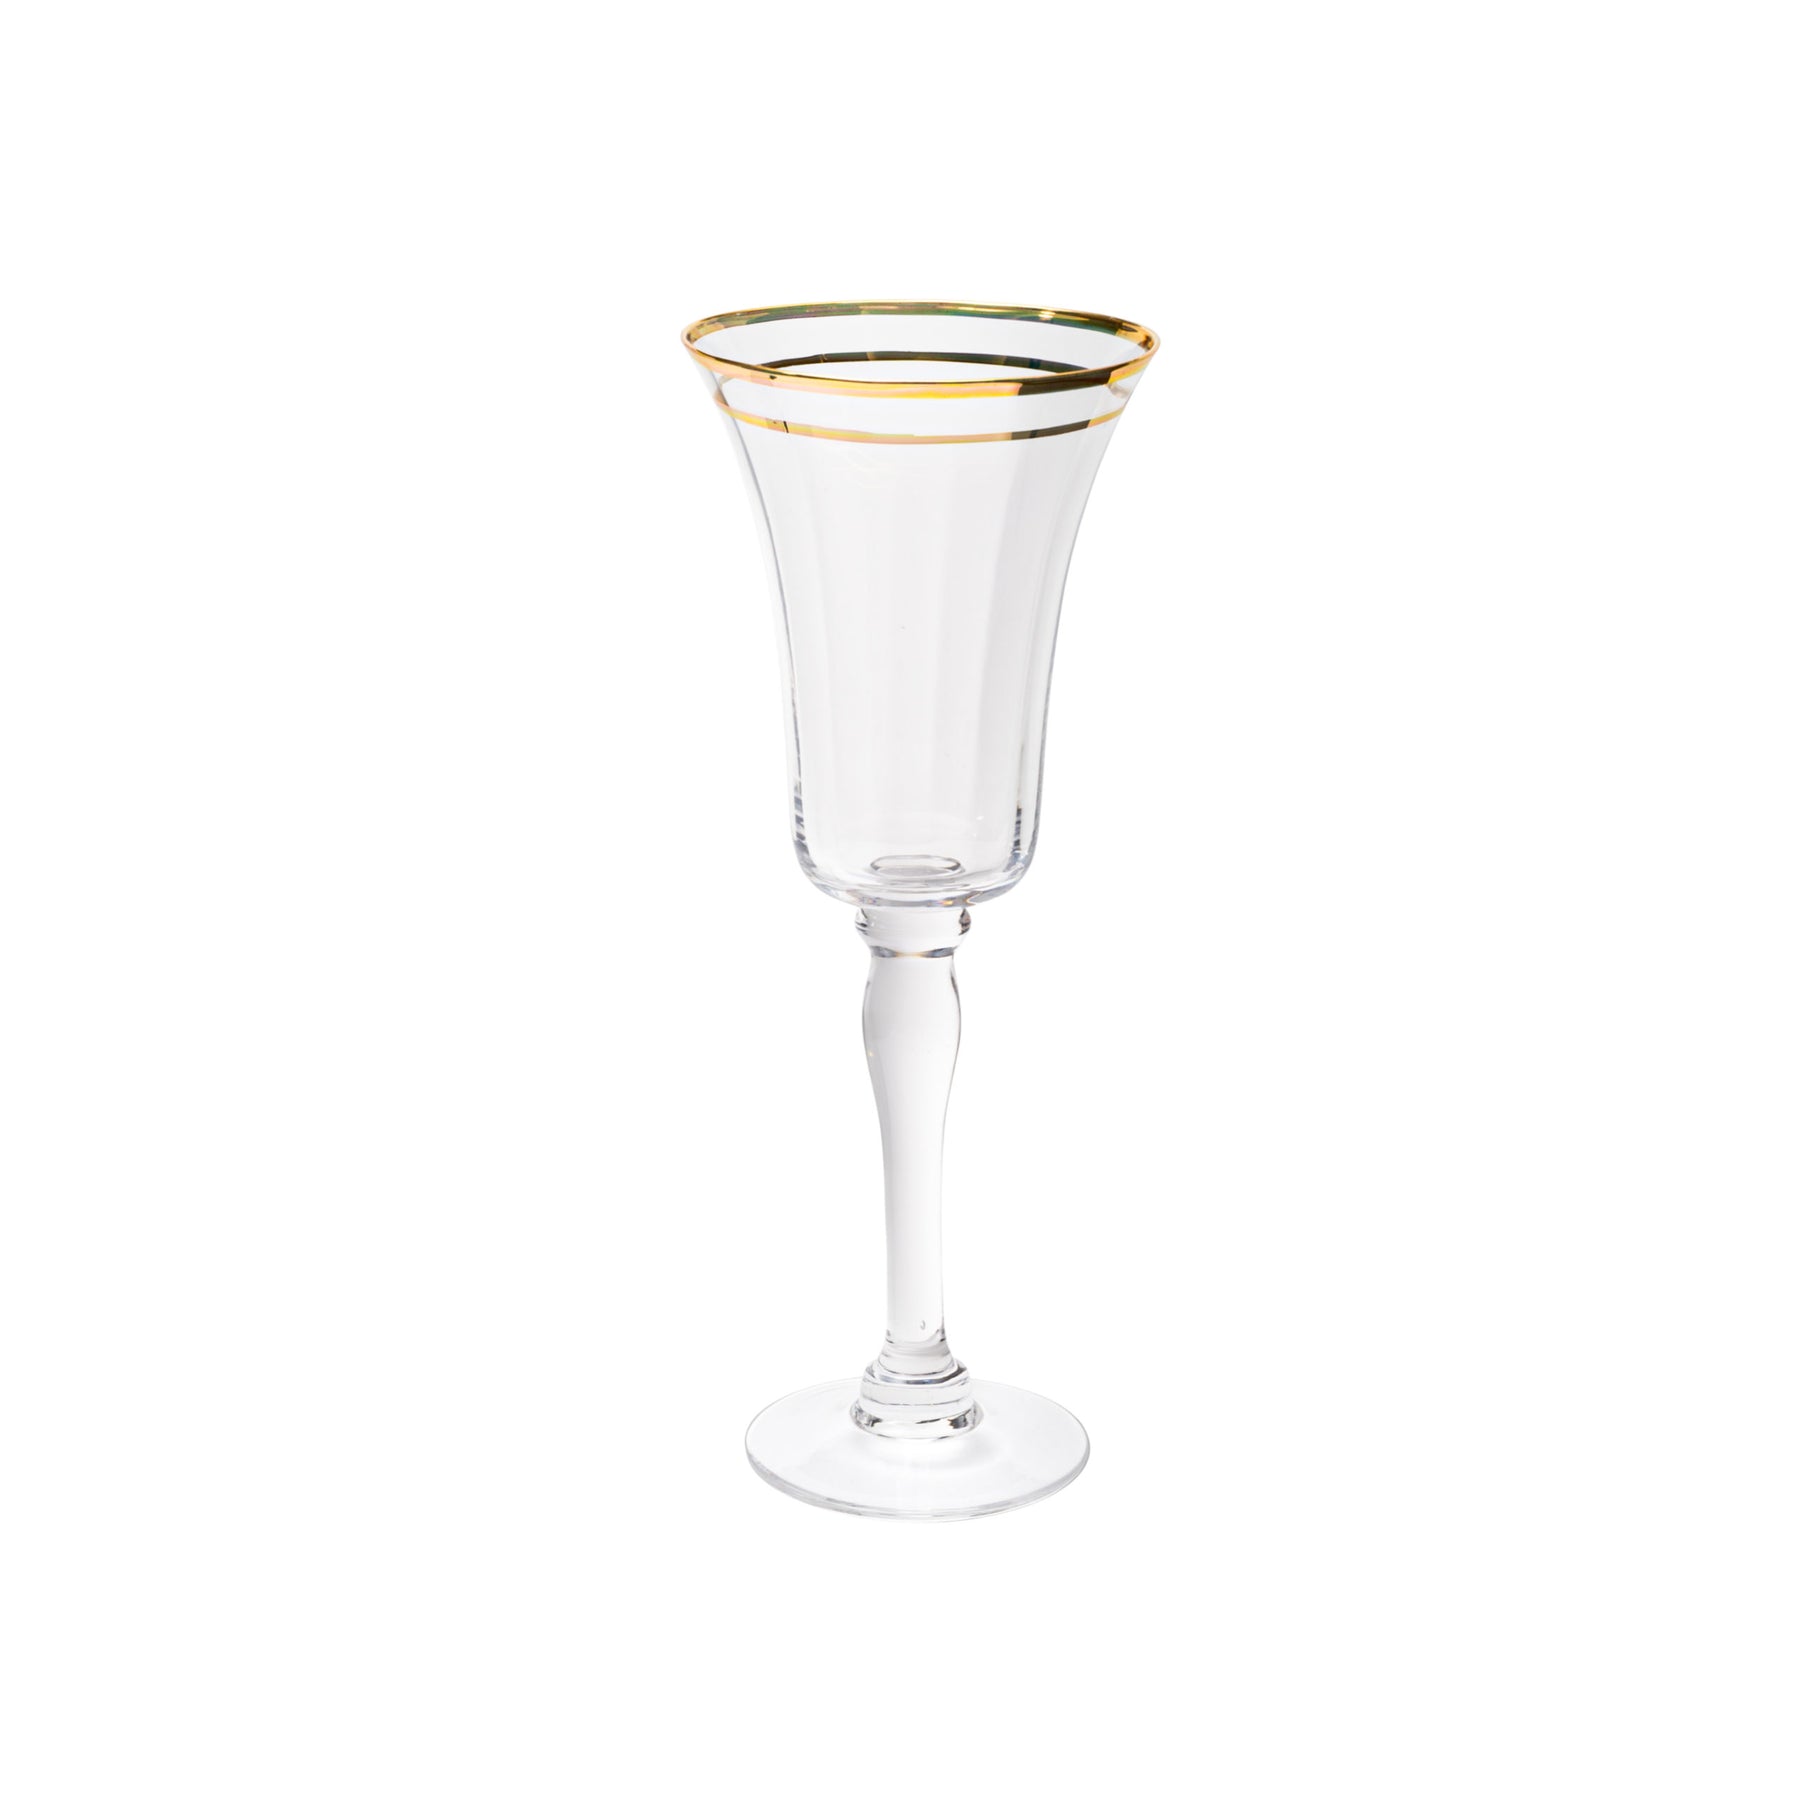 Vikko Decor Bella Clear With Gold Rim Wine Glass, Set of 4